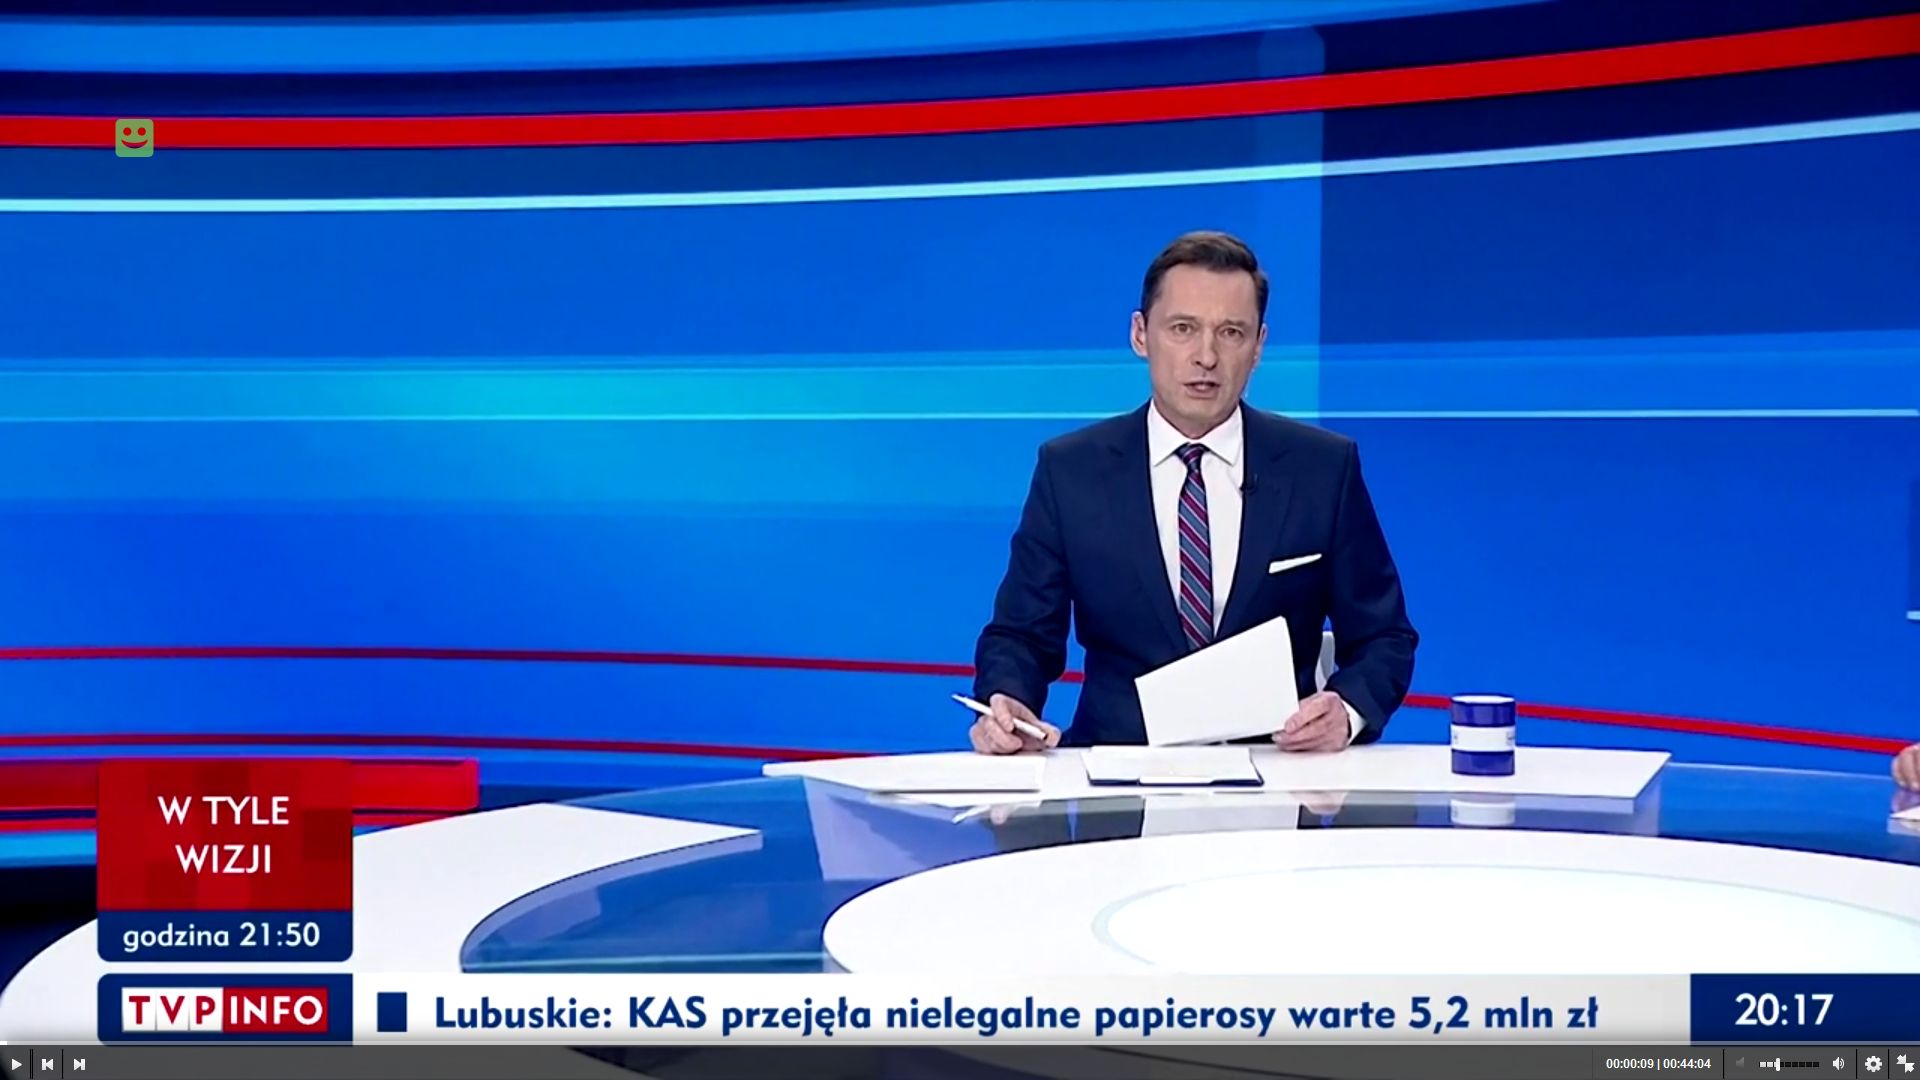 Instytut Lecha Wałęsy zareagował na program w TVP Info o Lechu Wałęsie